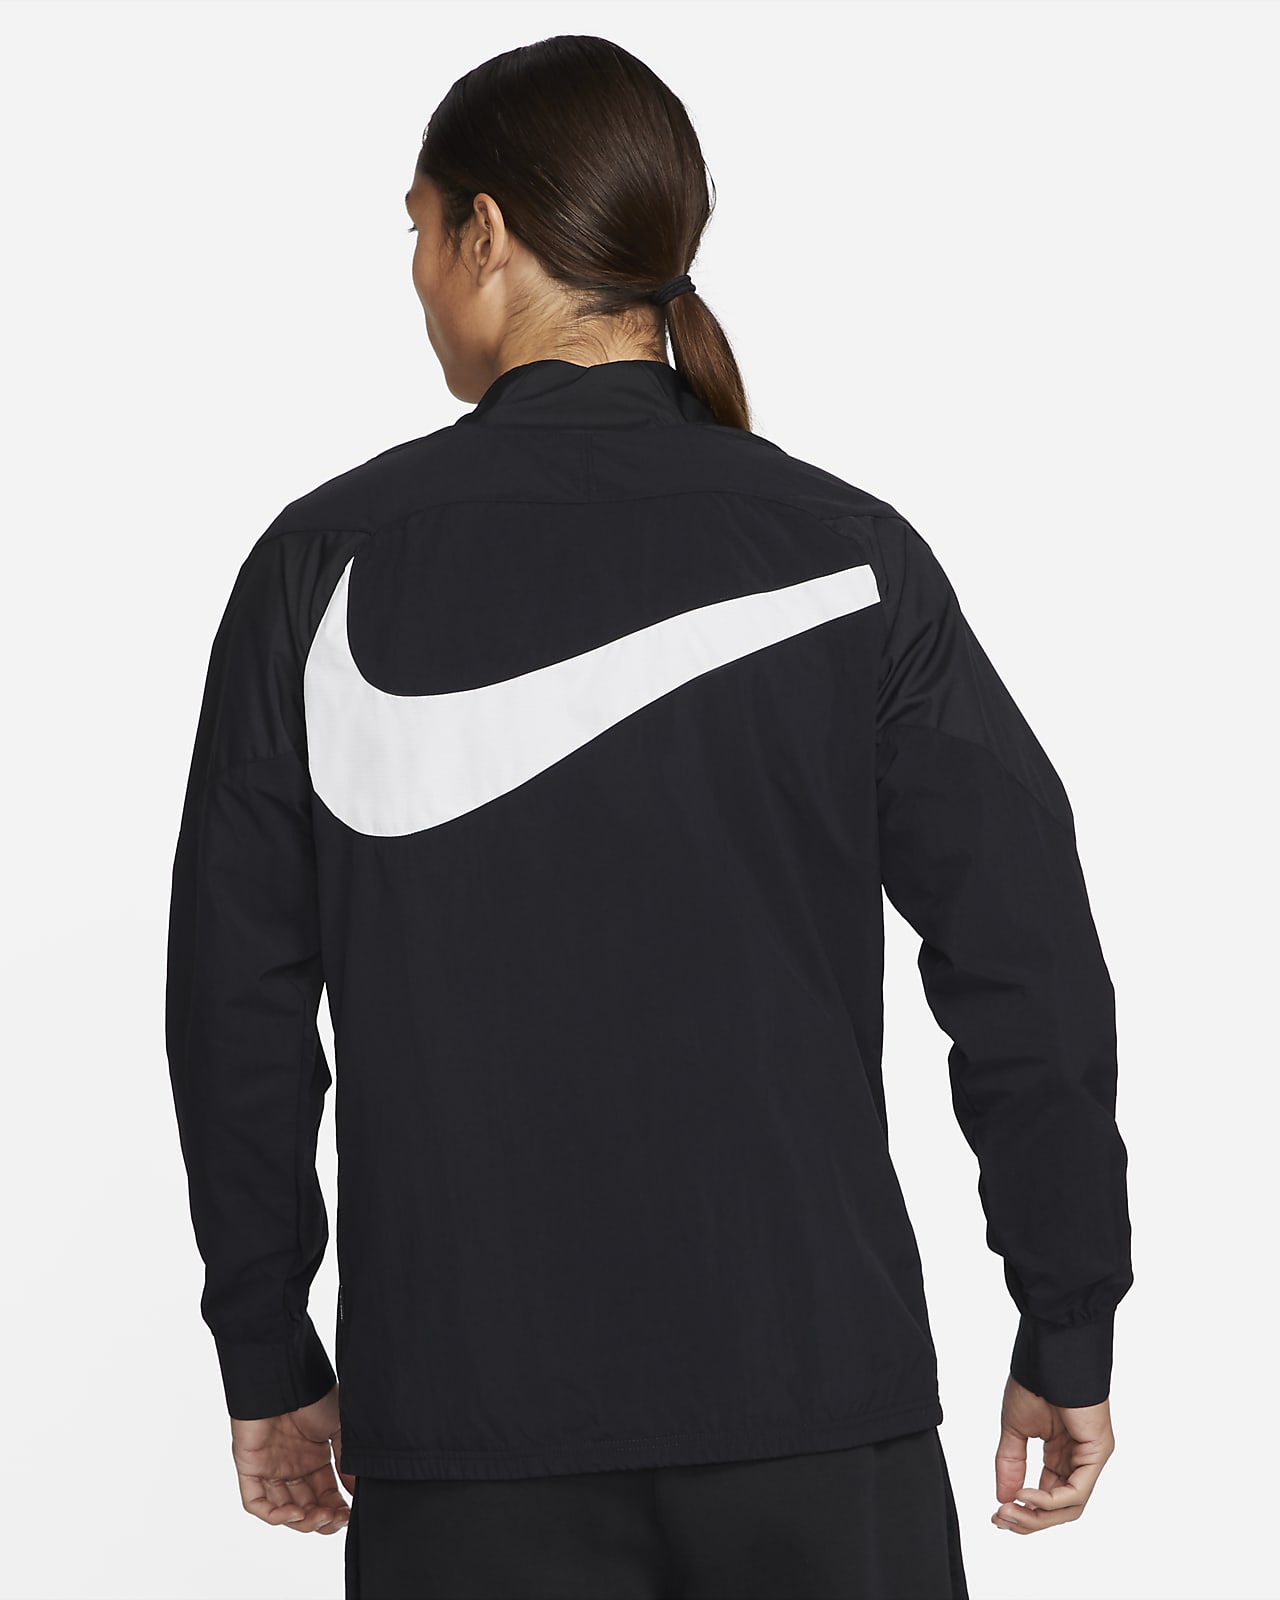 Nike公式 ナイキ F C Awf メンズ ウーブン サッカー トラックジャケット オンラインストア 通販サイト